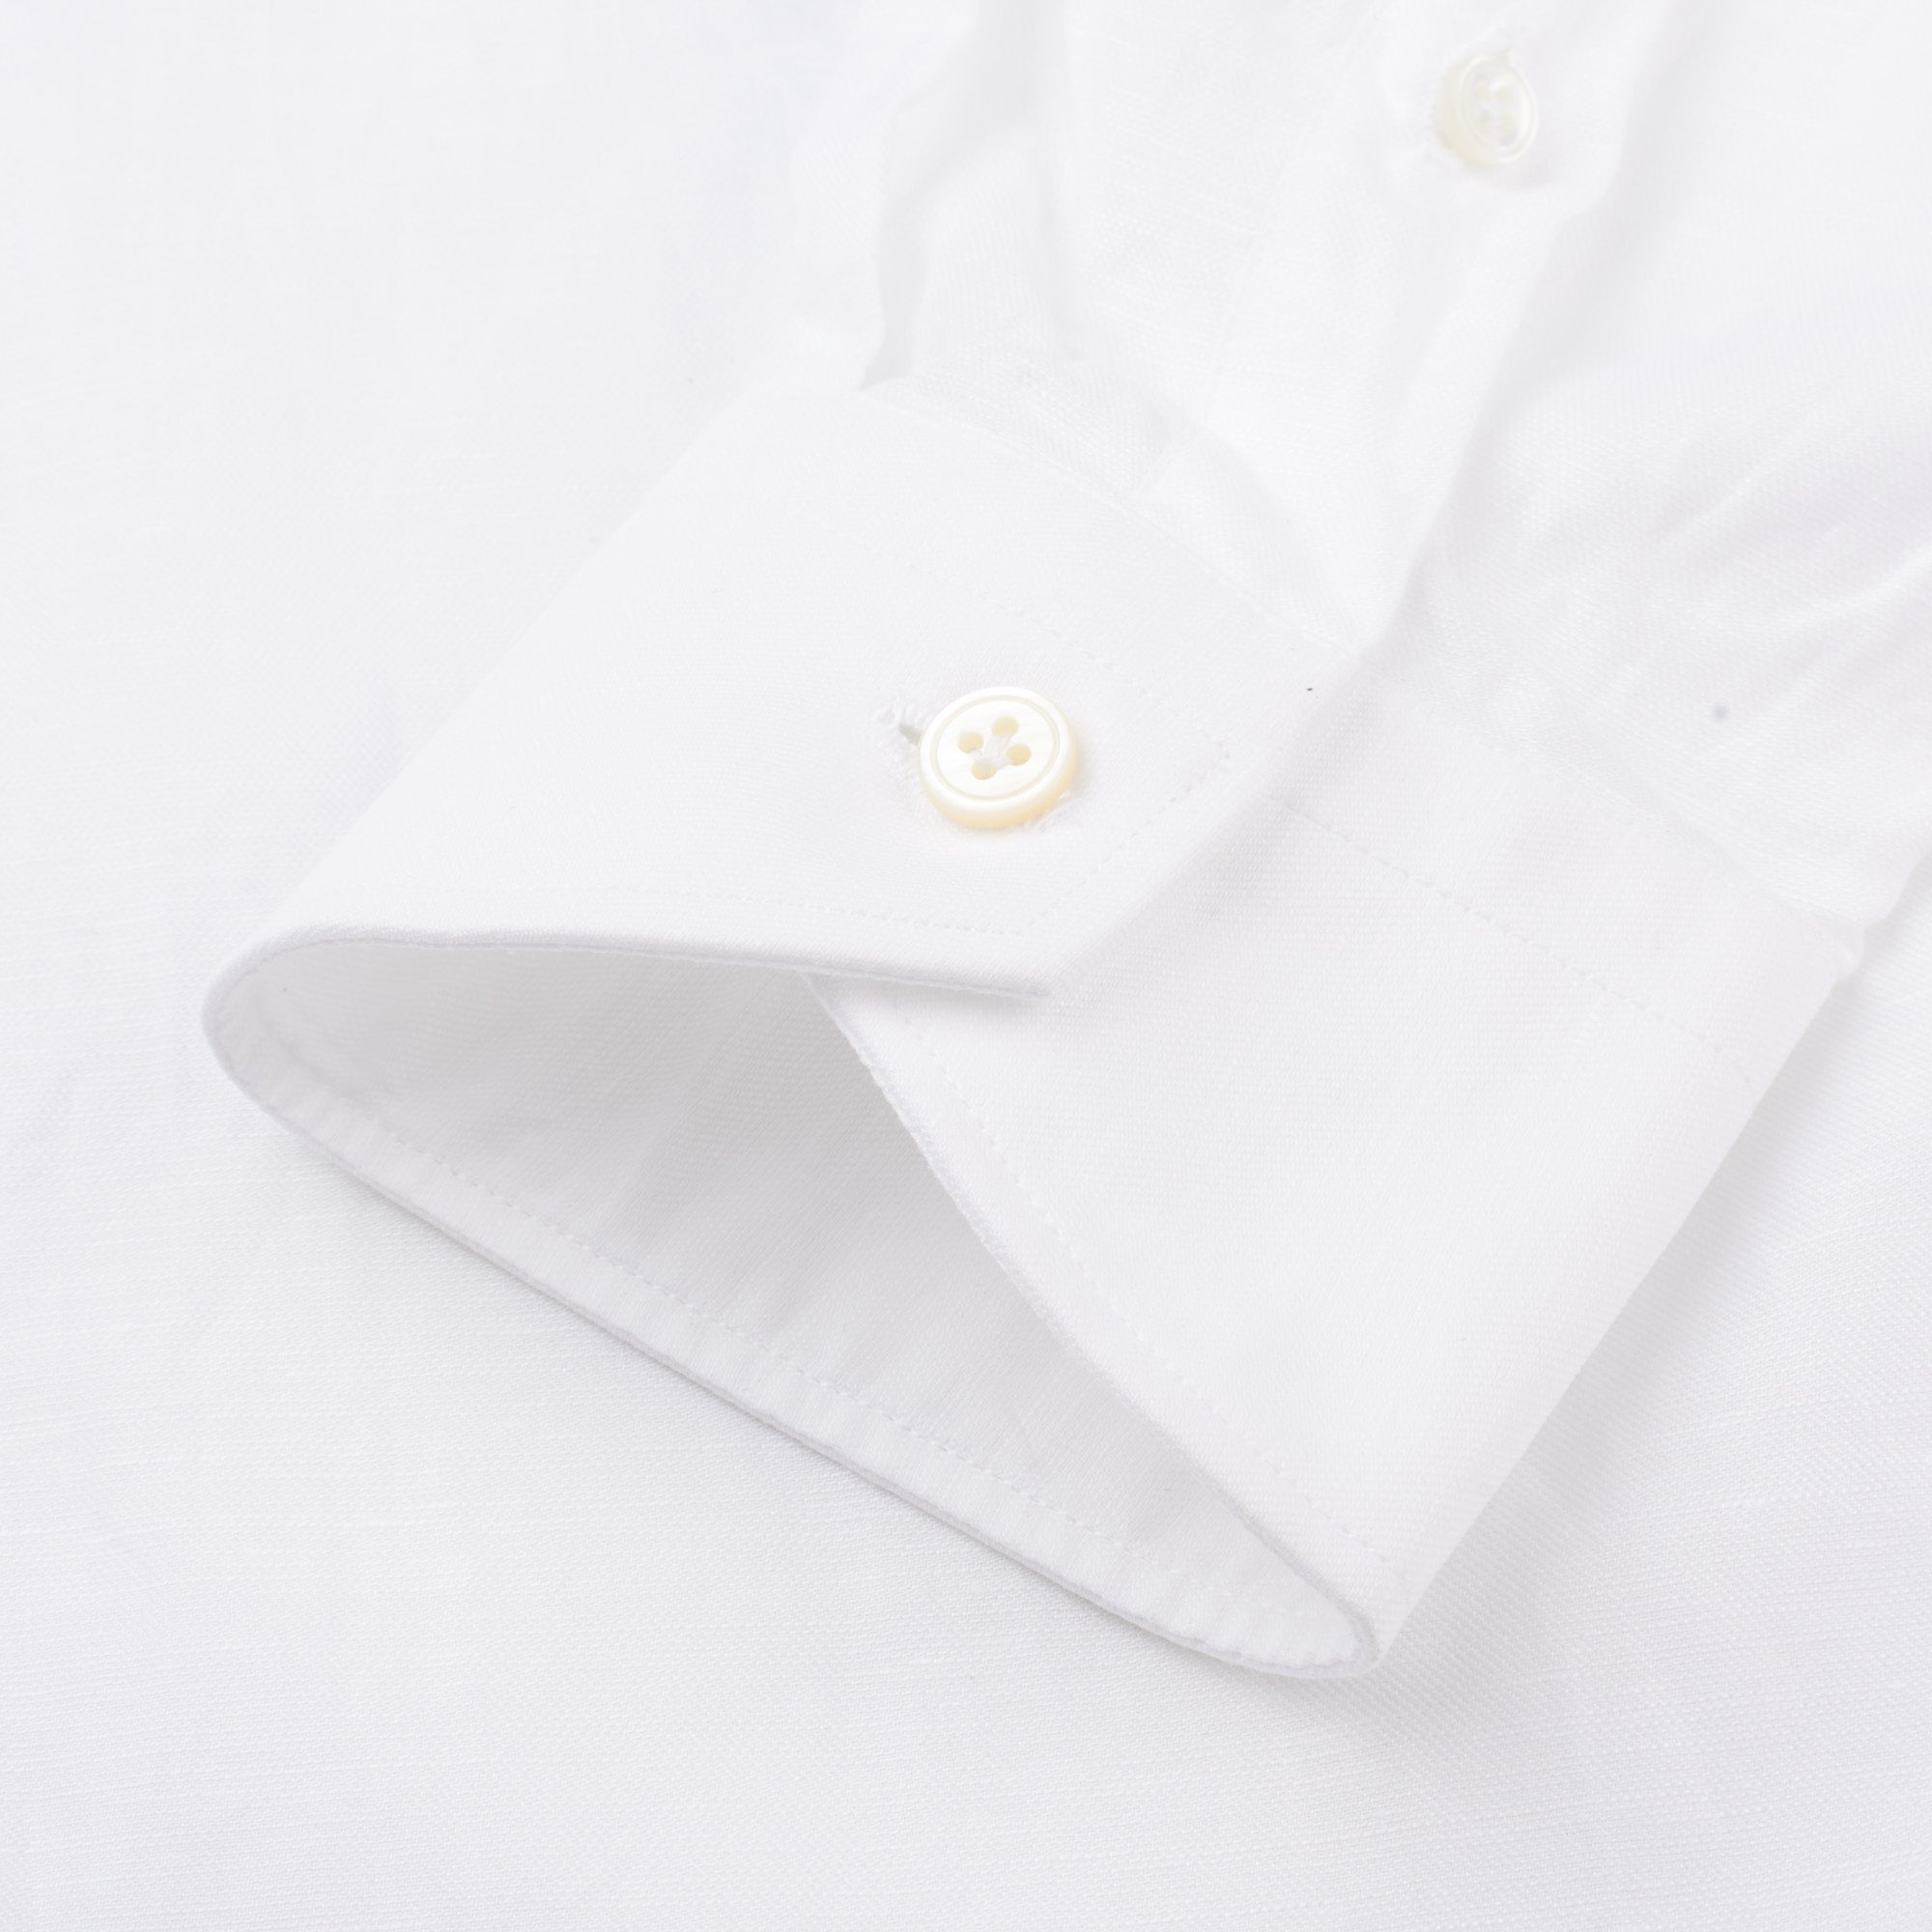 VINCENZO DI RUGGIERO Handmade White Cotton-Linen Dress Shirt EU 40 US 15.75 VINCENZO DI RUGGIERO